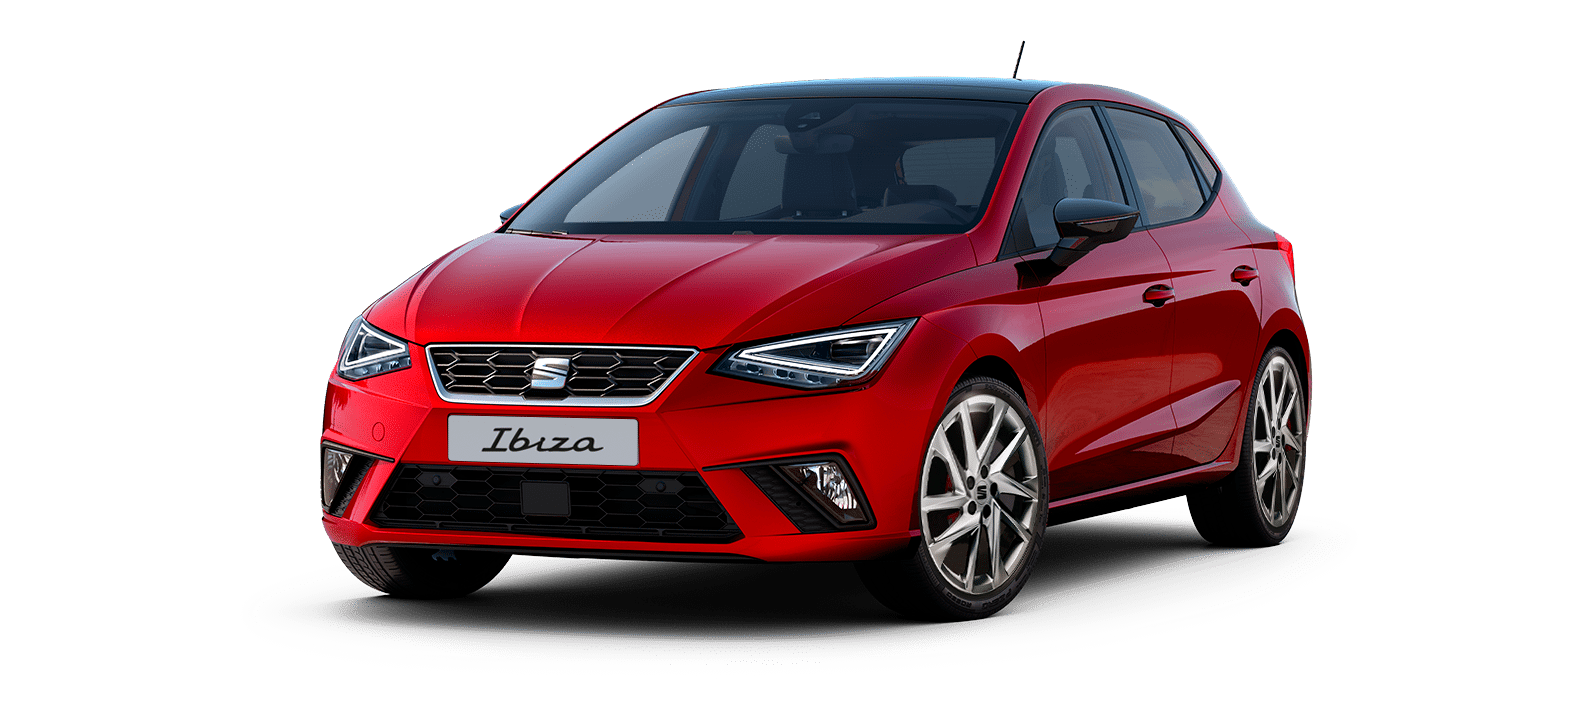 SEAT Ibiza FR 1.0 TSI, precio en México y características de la versión  turbo